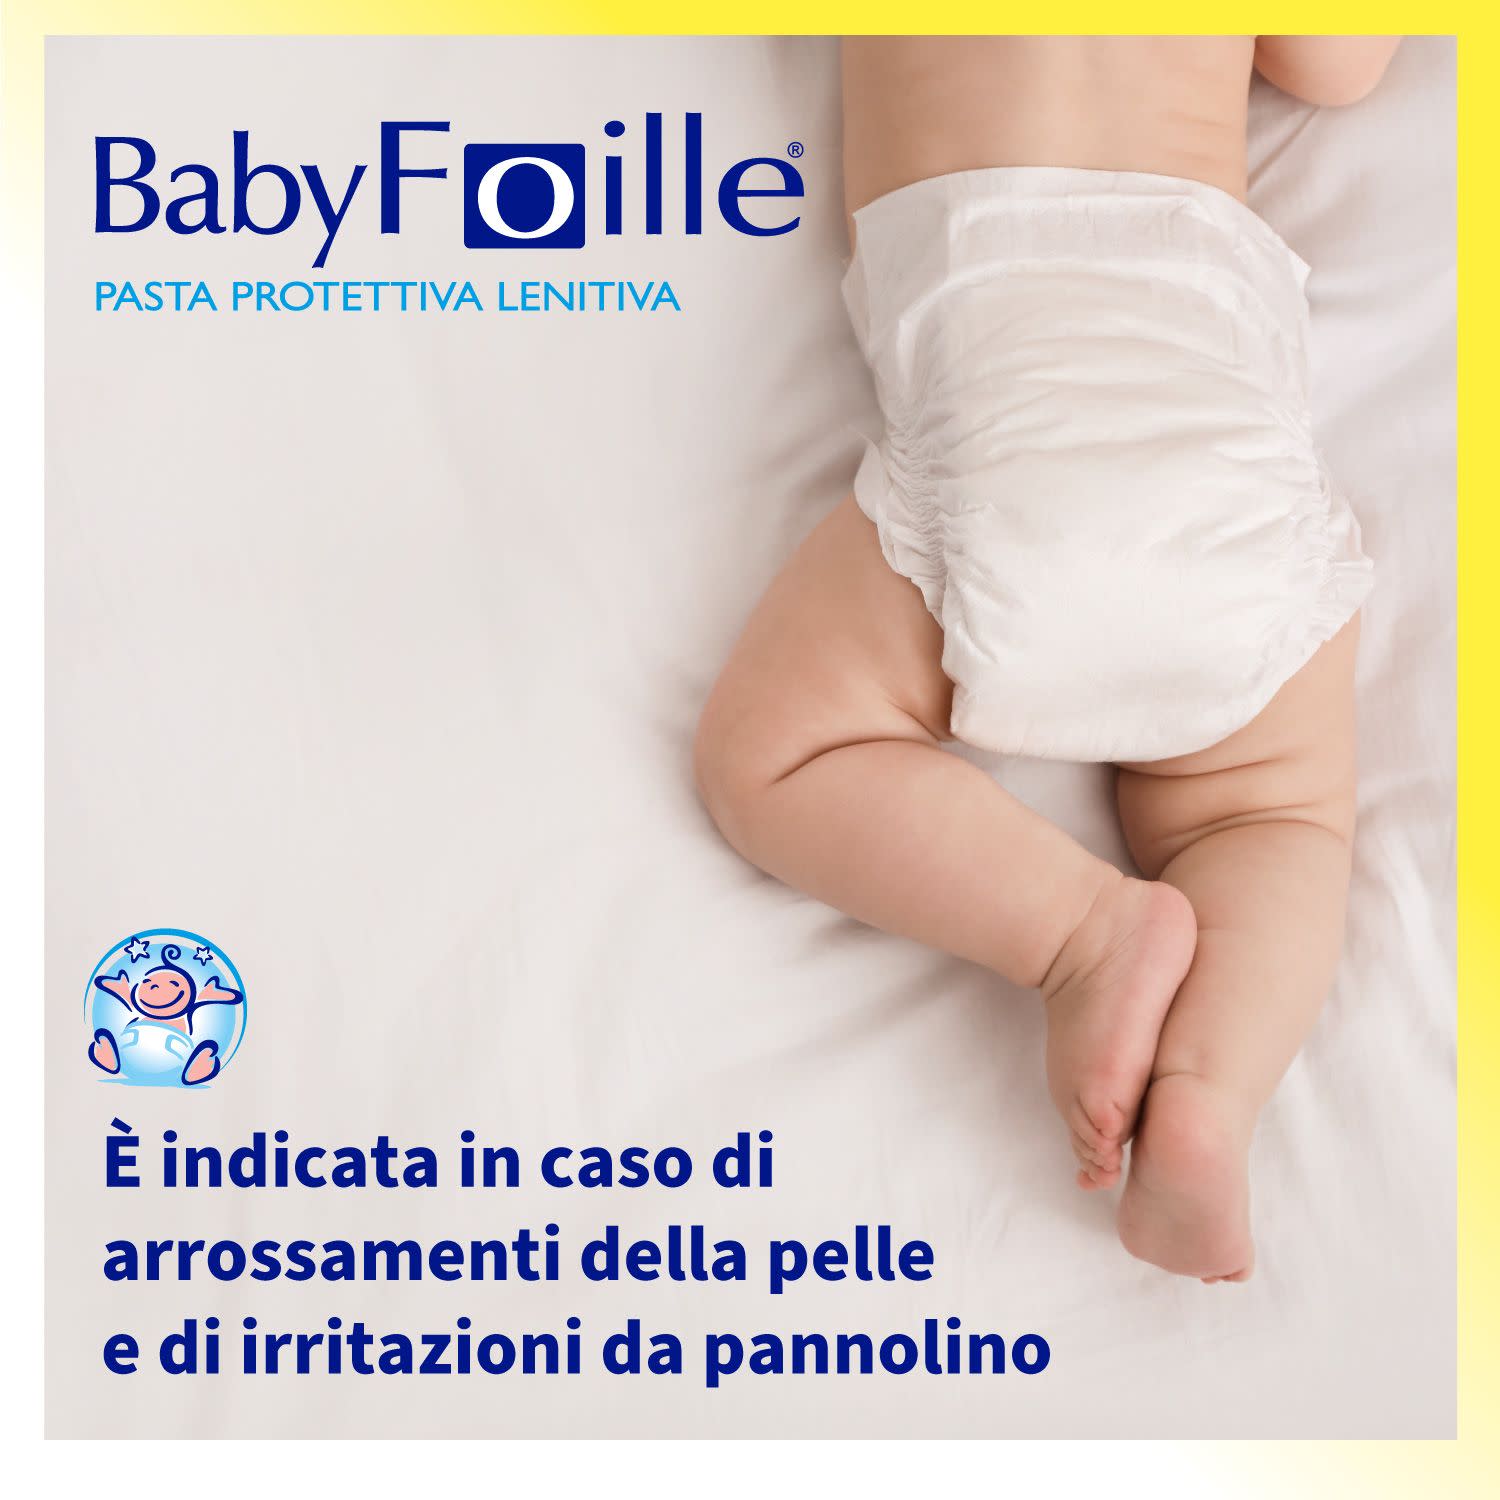 975997457 - Baby Foille Pasta Protettiva Lenitiva 145g - 4733027_4.jpg